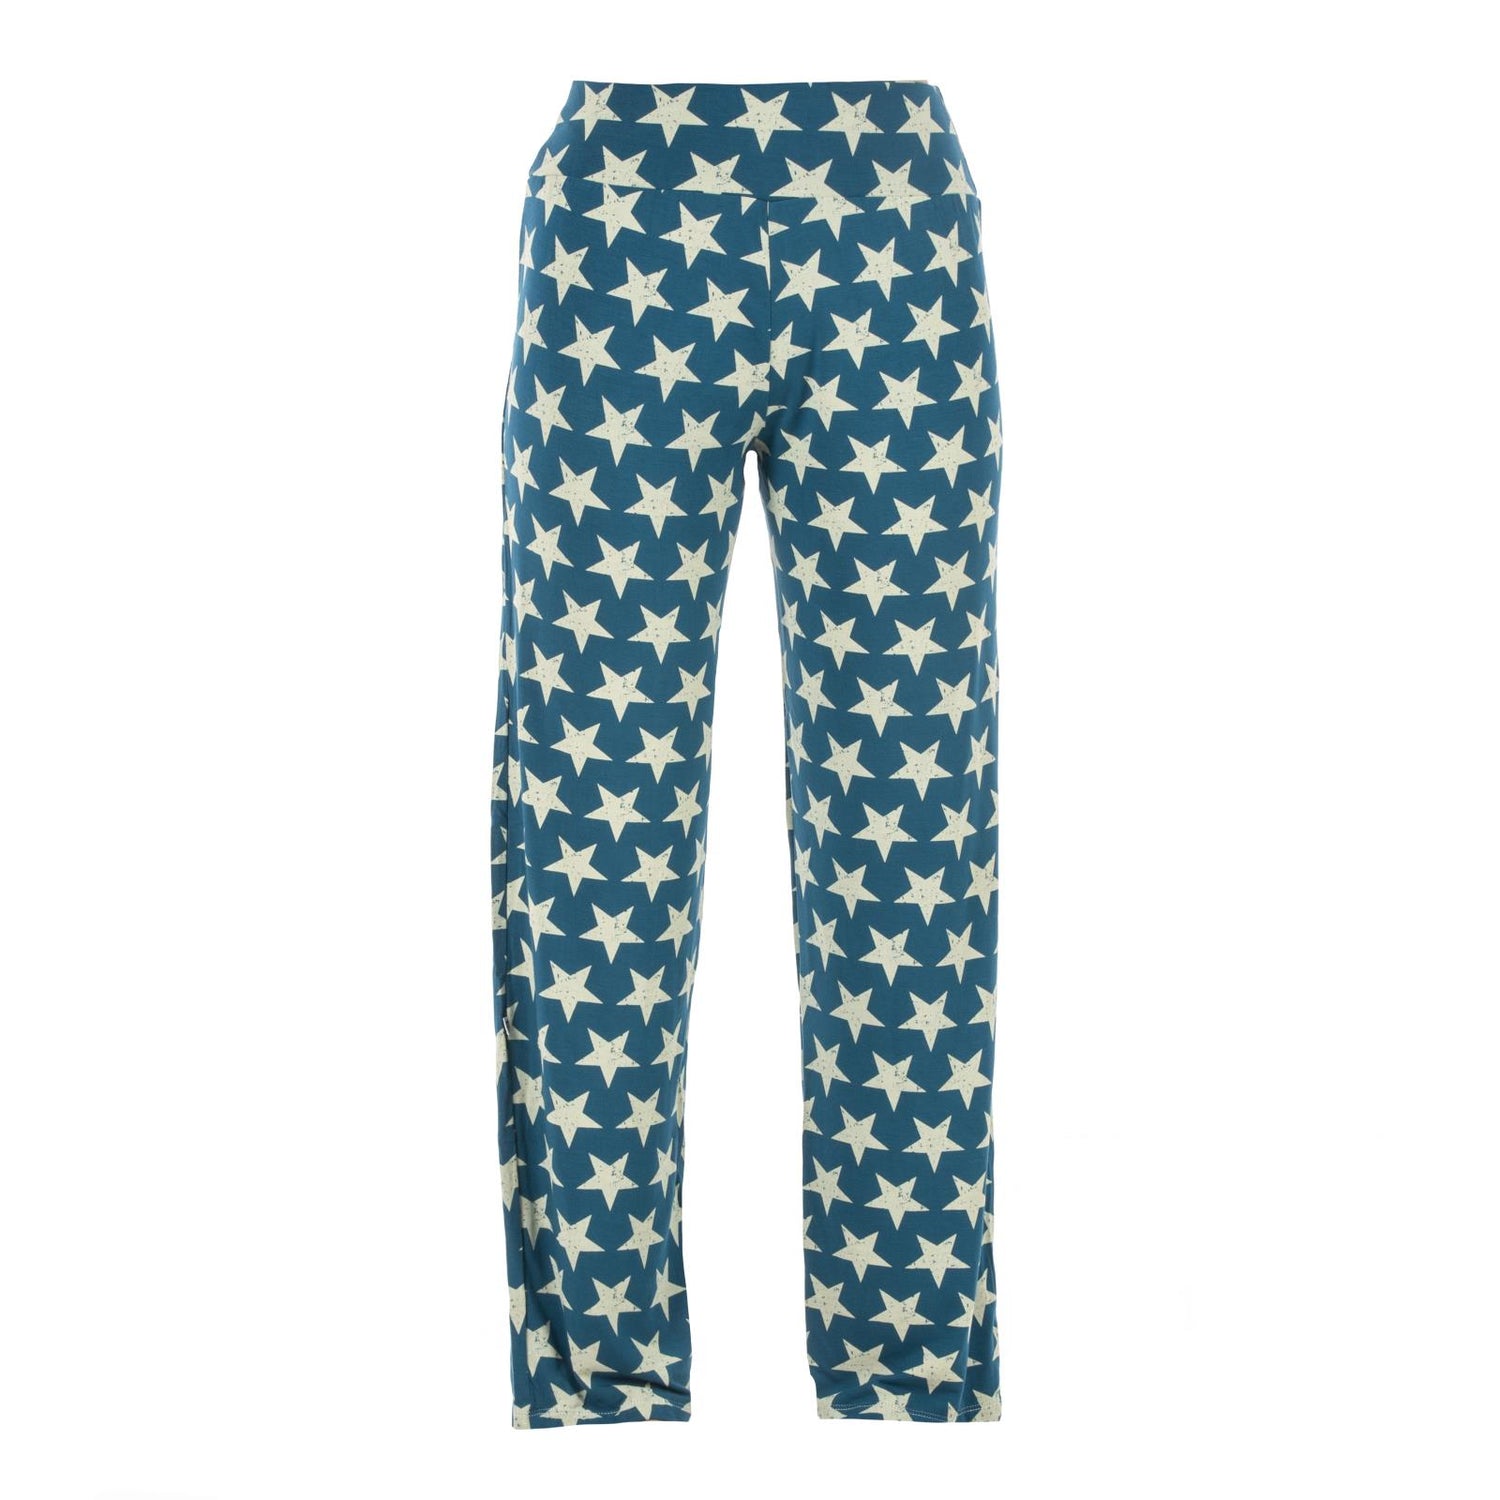 Women's Print Pajama Pants in Vintage Stars